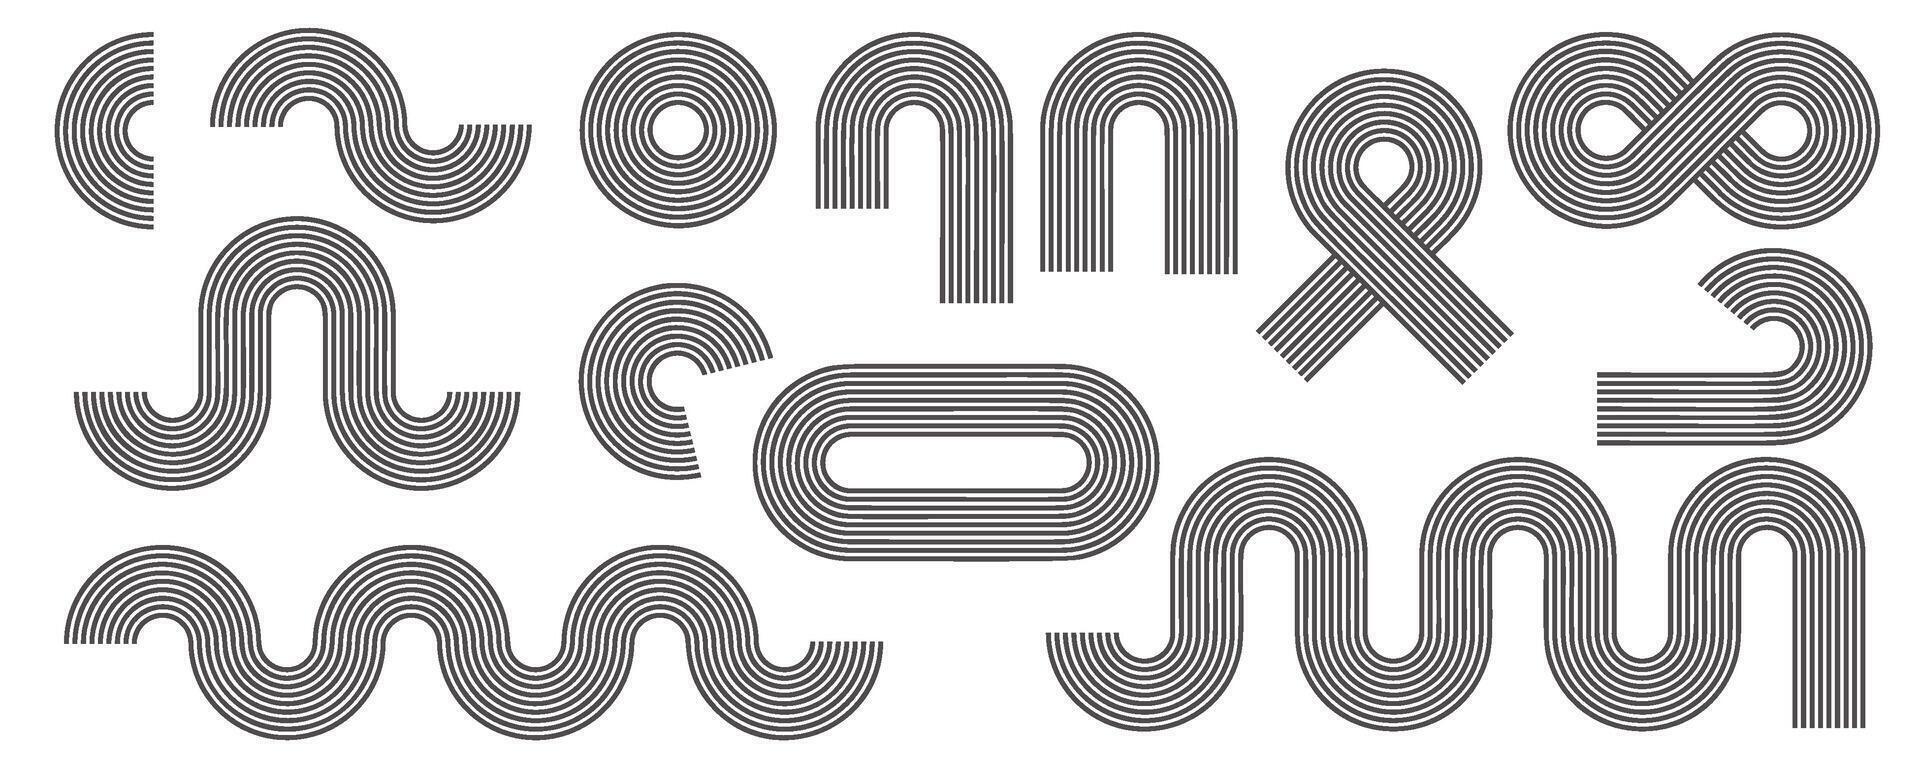 meetkundig lijnen zen patronen. abstract zwart bogen en vormen. balans figuren met lineair schets beroertes ontwerp. nordic boho minimaal biologisch tekeningen en esthetisch retro afdrukken. vector